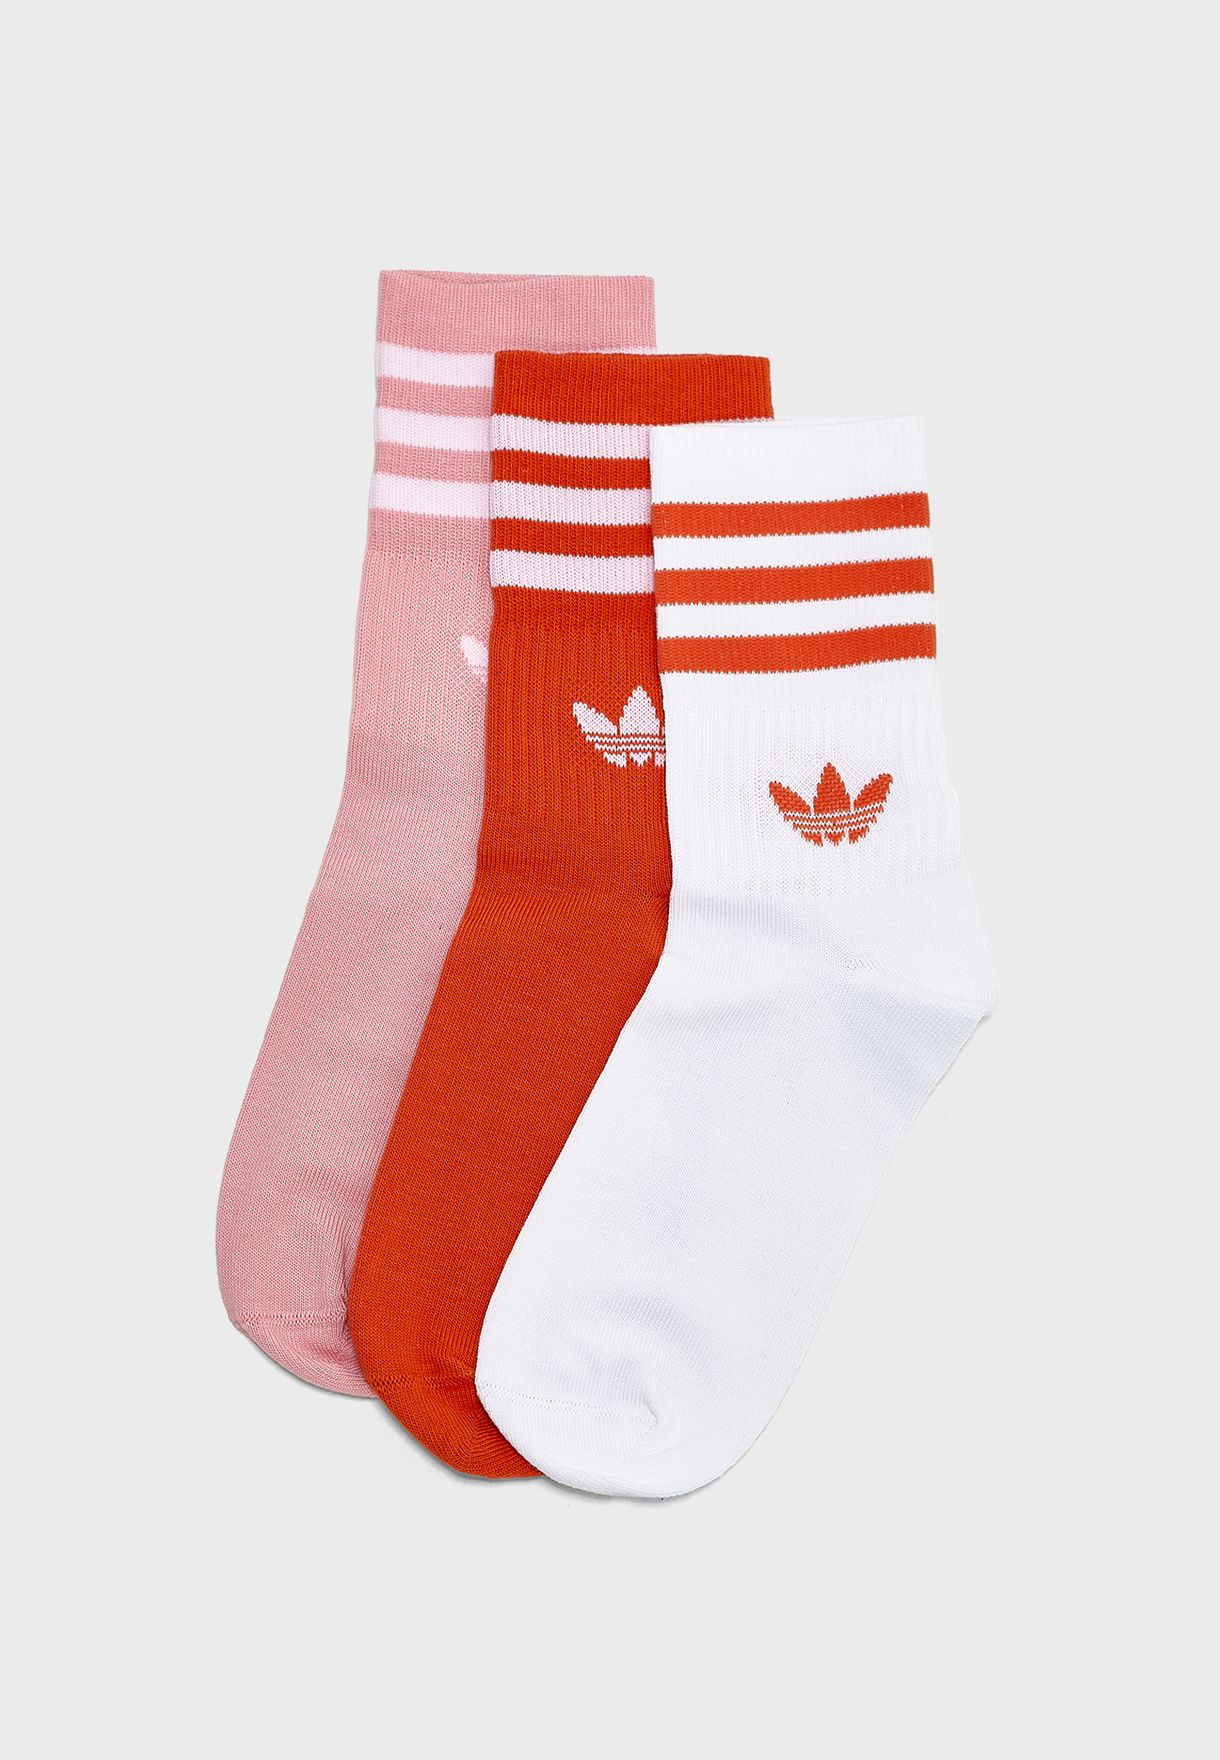 buy adidas socks